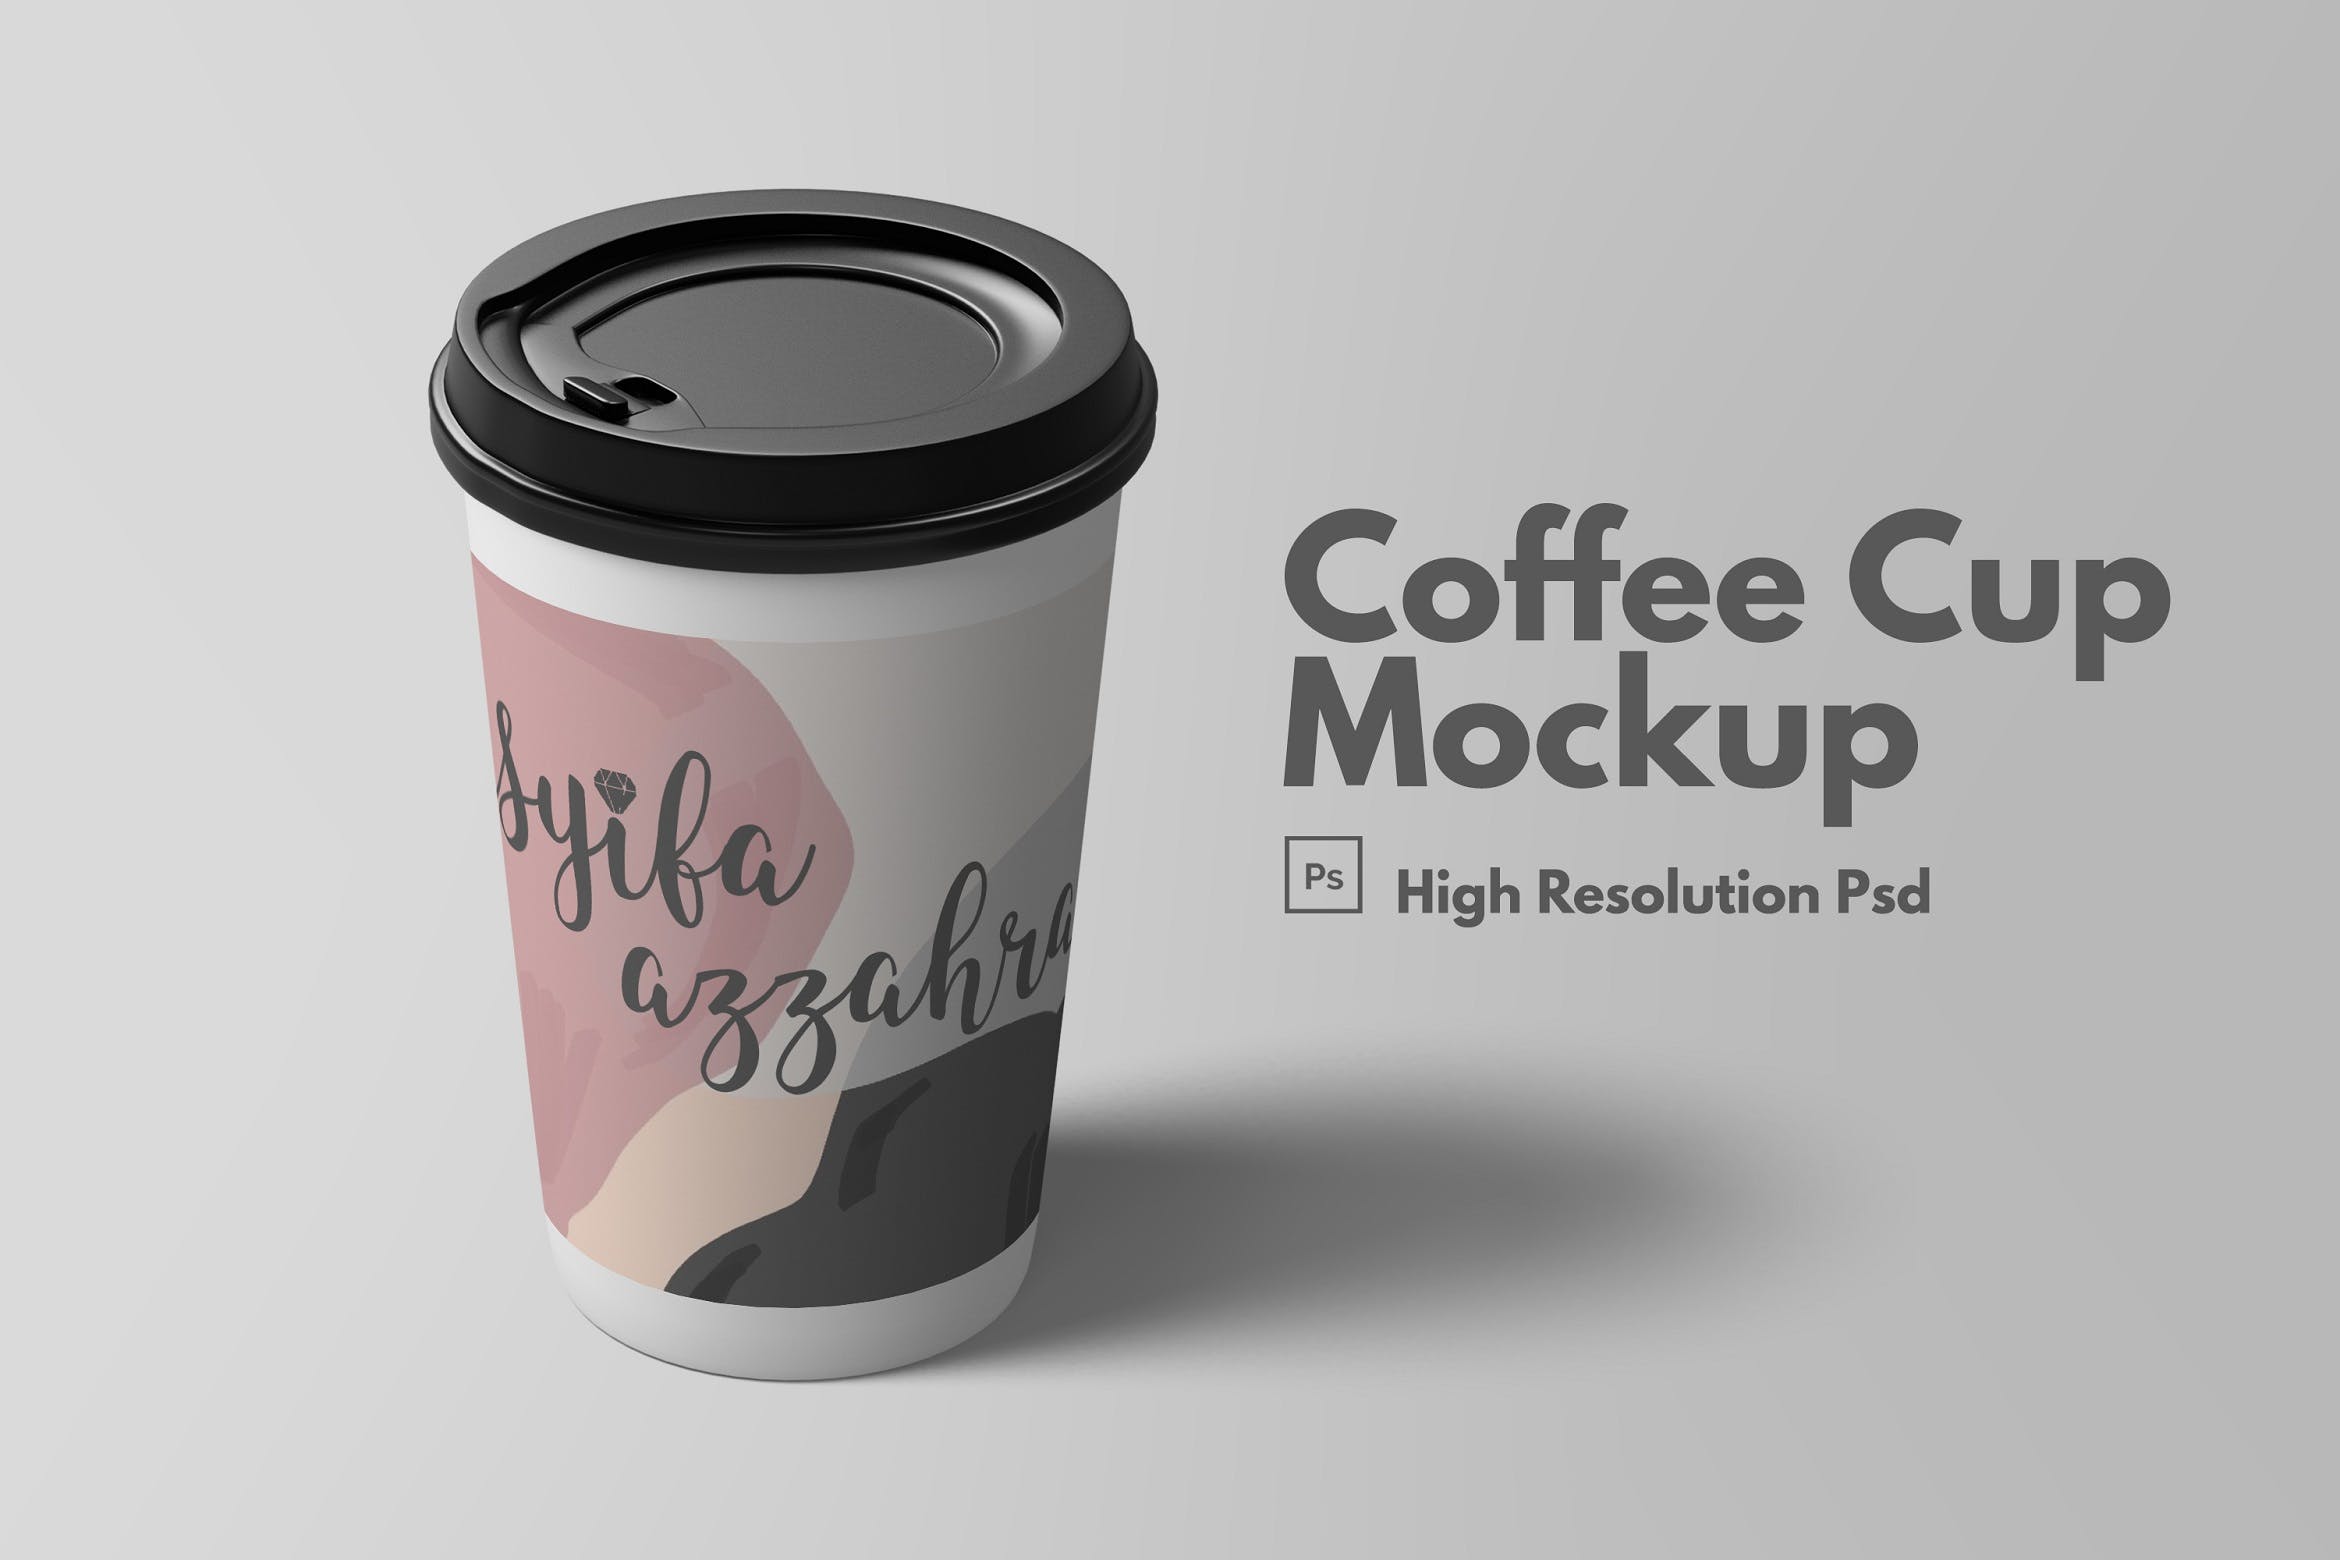 咖啡杯纸质热饮外包装设计效果图样机V.1 Coffee Cup Mockup V.1设计素材模板